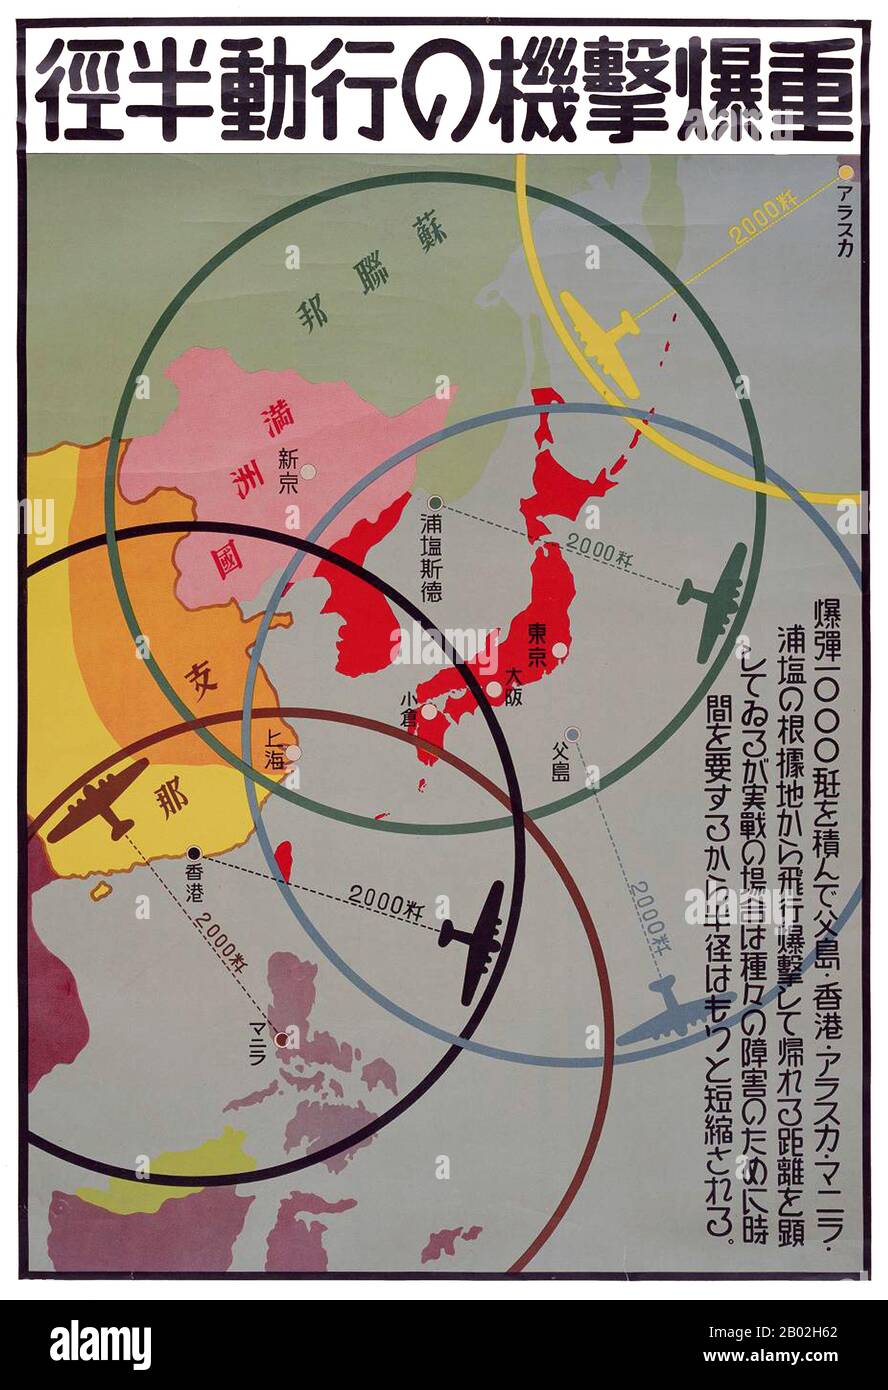 La guerra del Pacifico, chiamata anche guerra Asia-Pacifico, si riferisce in generale alle parti della seconda guerra mondiale che si sono svolte nell'Oceano Pacifico, nelle sue isole e nell'Estremo Oriente. Il termine Guerra del Pacifico è usato per includere il teatro dell'Oceano Pacifico, il teatro del Pacifico sud-occidentale, il teatro dell'Asia sud-orientale e La Seconda guerra sino-giapponese, compreso anche il conflitto sovietico-giapponese del 1945. Si ritiene generalmente che la guerra del Pacifico abbia avuto inizio il 7/8 dicembre 1941 con l'invasione giapponese della Thailandia per l'invasione della Malaya britannica, e l'attacco a Pearl Harbor nel Terri degli Stati Uniti Foto Stock